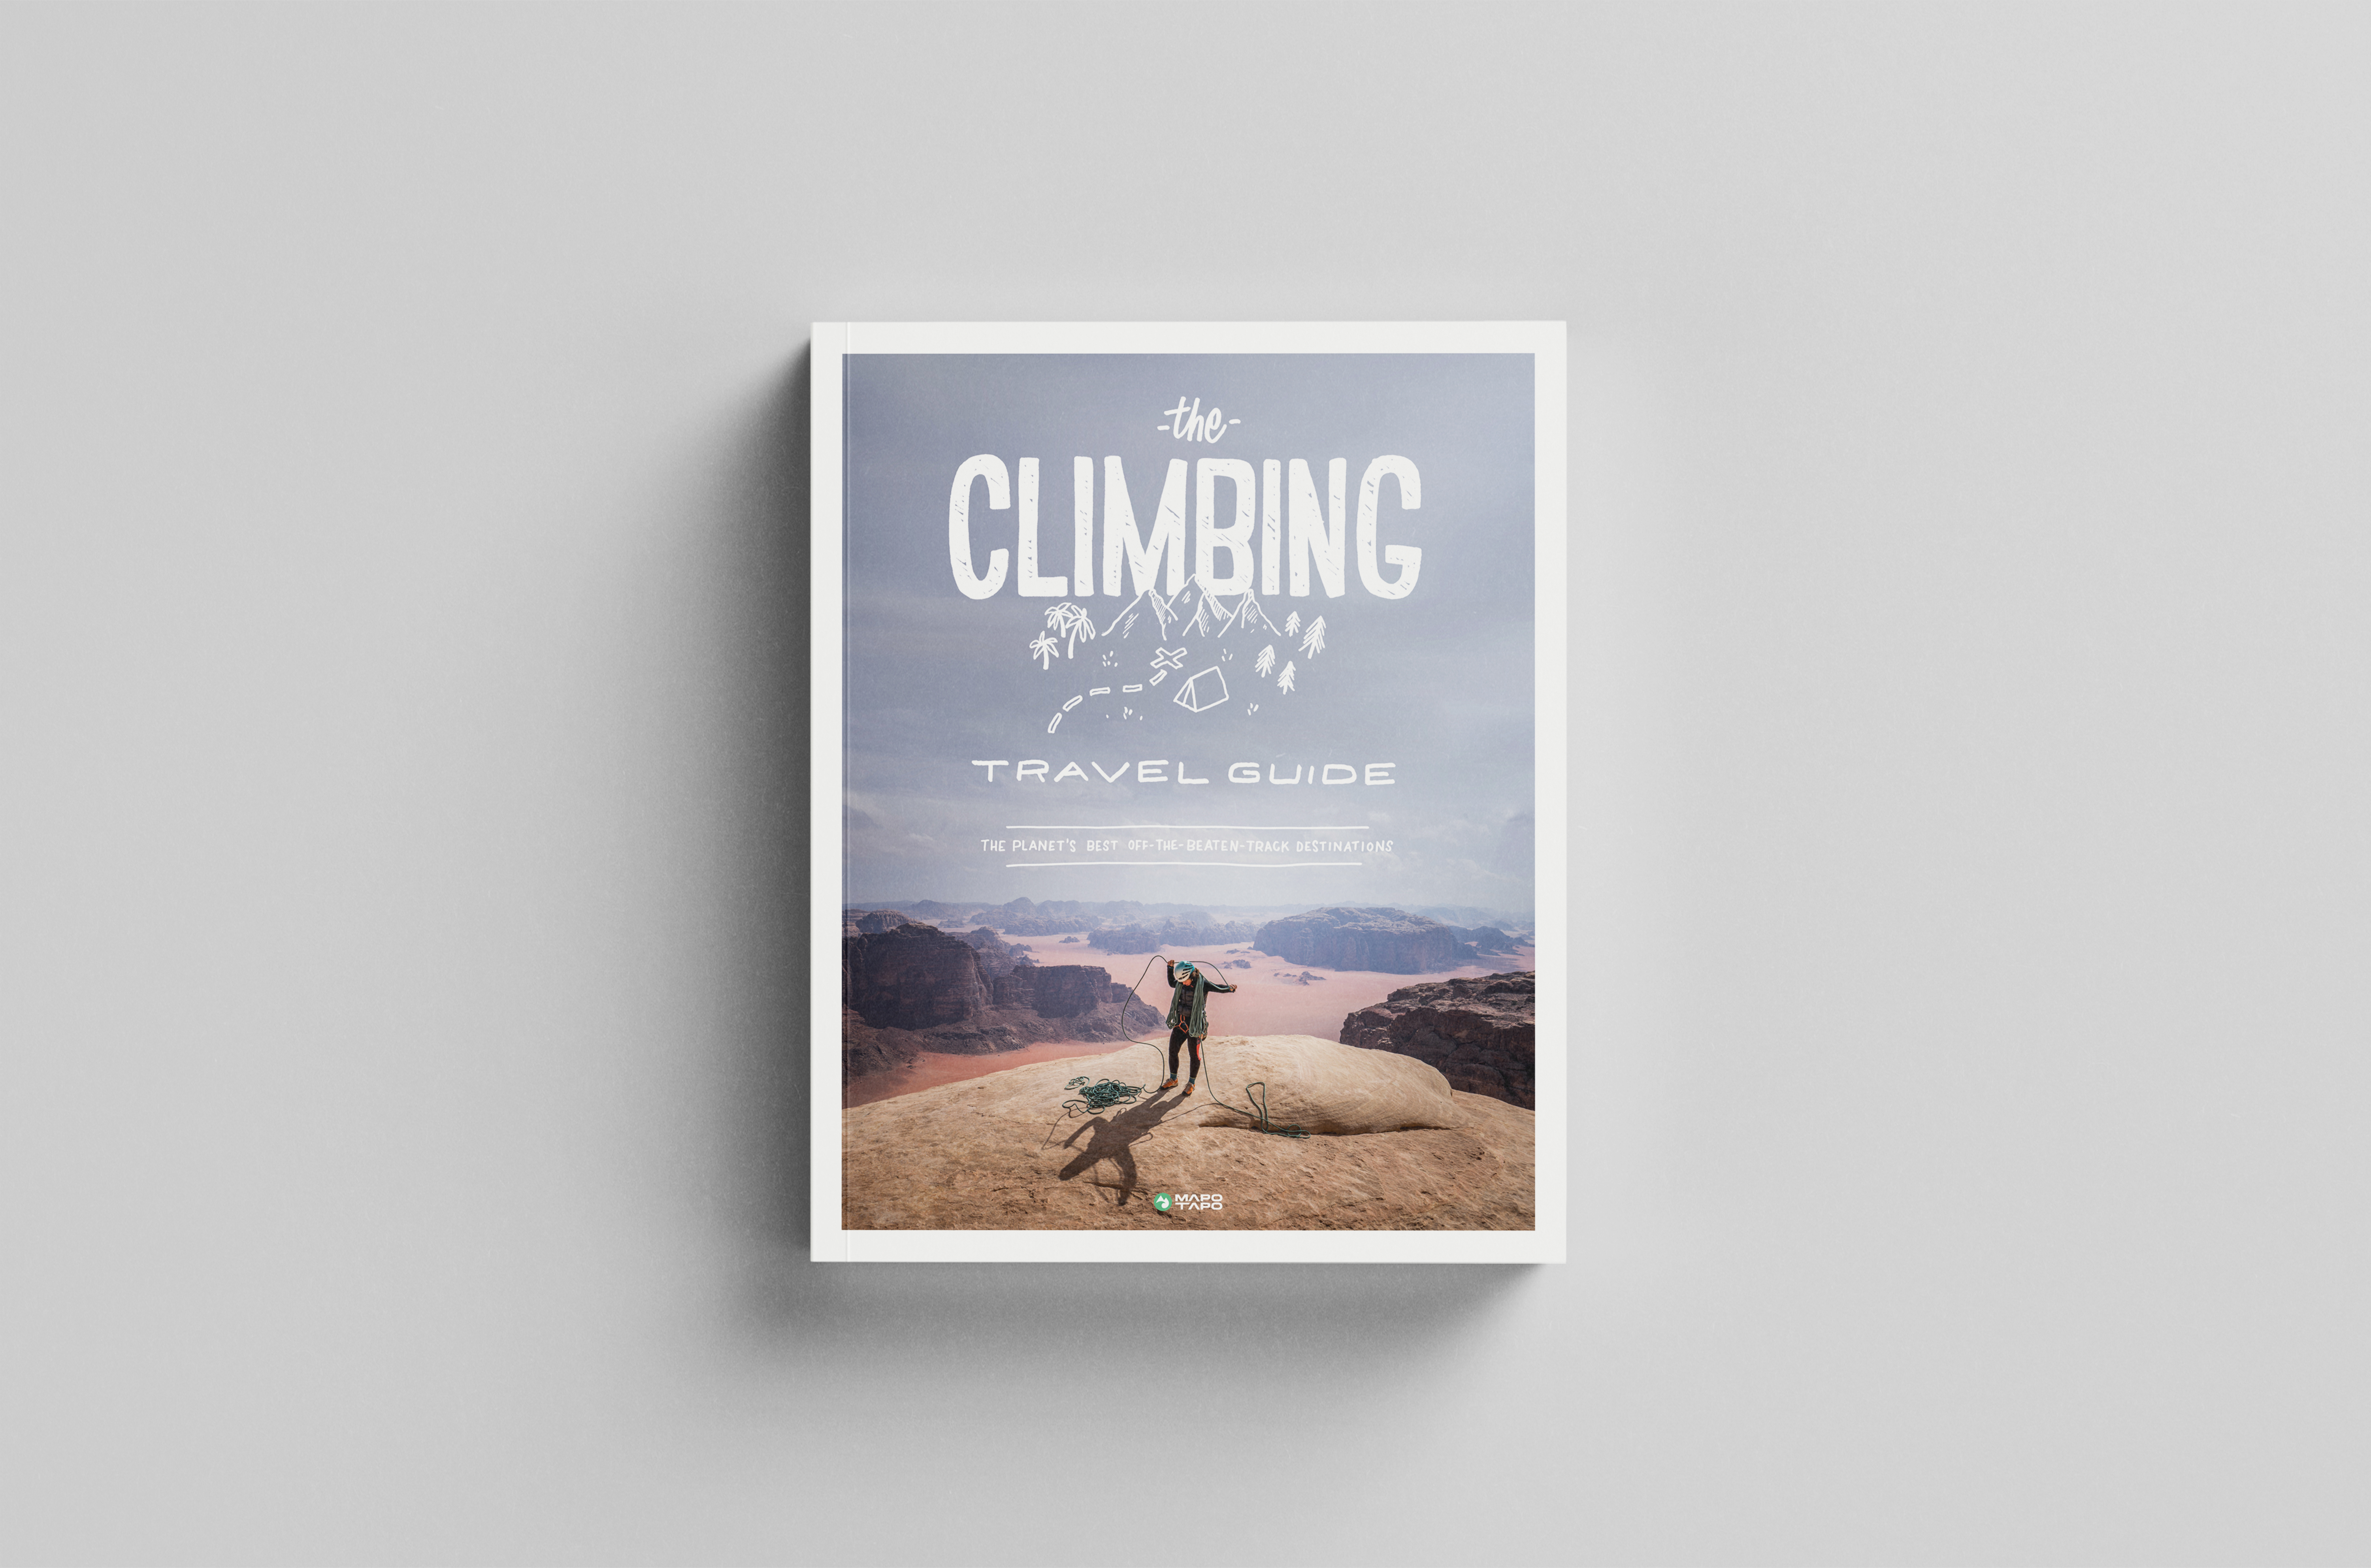 Un'immagine della copertina della Guida di viaggio all'arrampicata